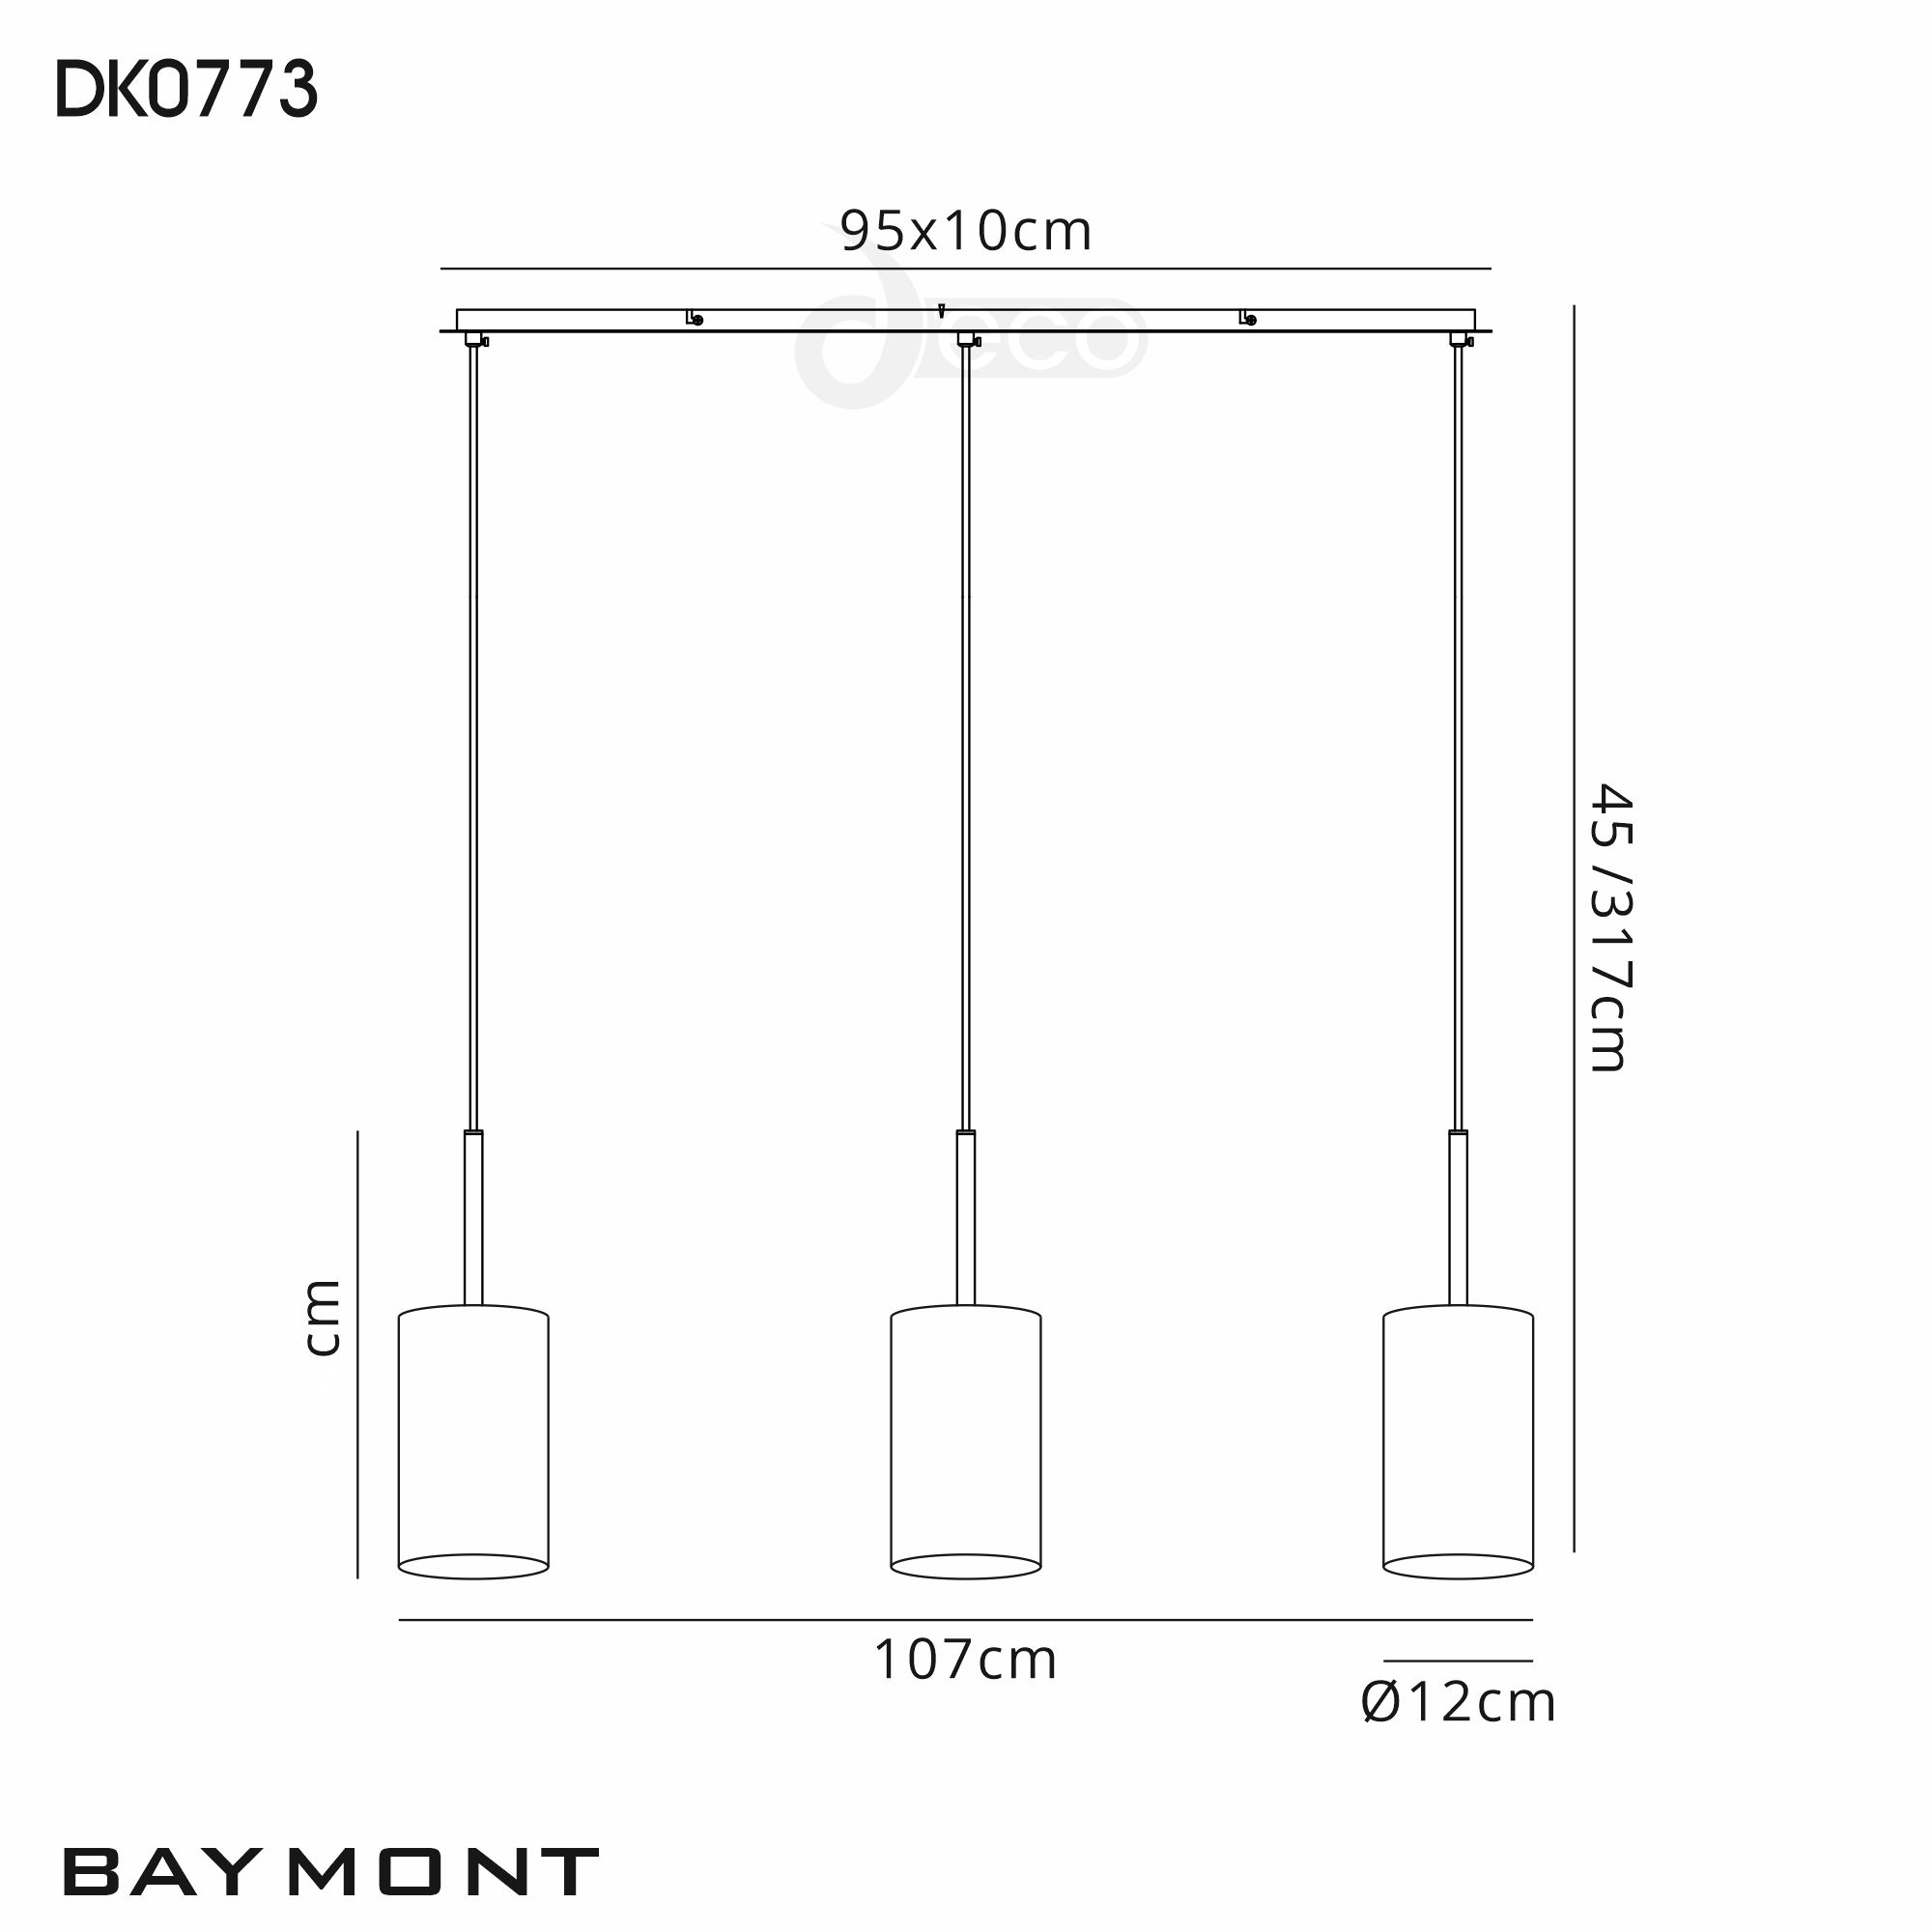 DK0773  Baymont 12cm Shade 3 Light Pendant Antique Brass, Black/White